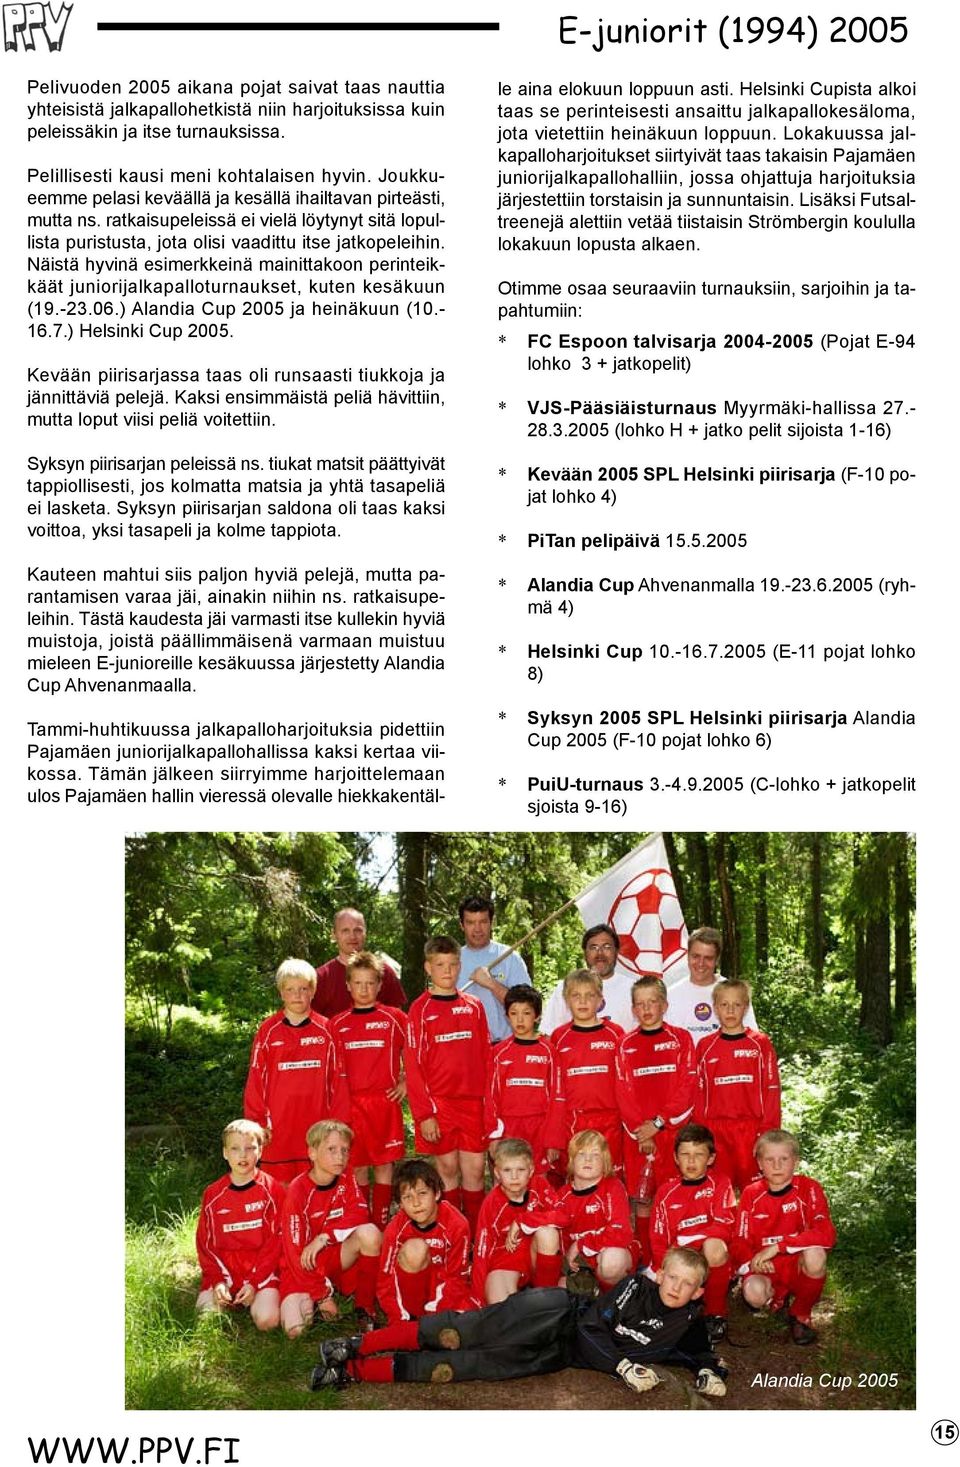 Näistä hyvinä esimerkkeinä mainittakoon perinteikkäät juniorijalkapalloturnaukset, kuten kesäkuun (19.-23.06.) Alandia Cup 2005 ja heinäkuun (10.- 16.7.) Helsinki Cup 2005.